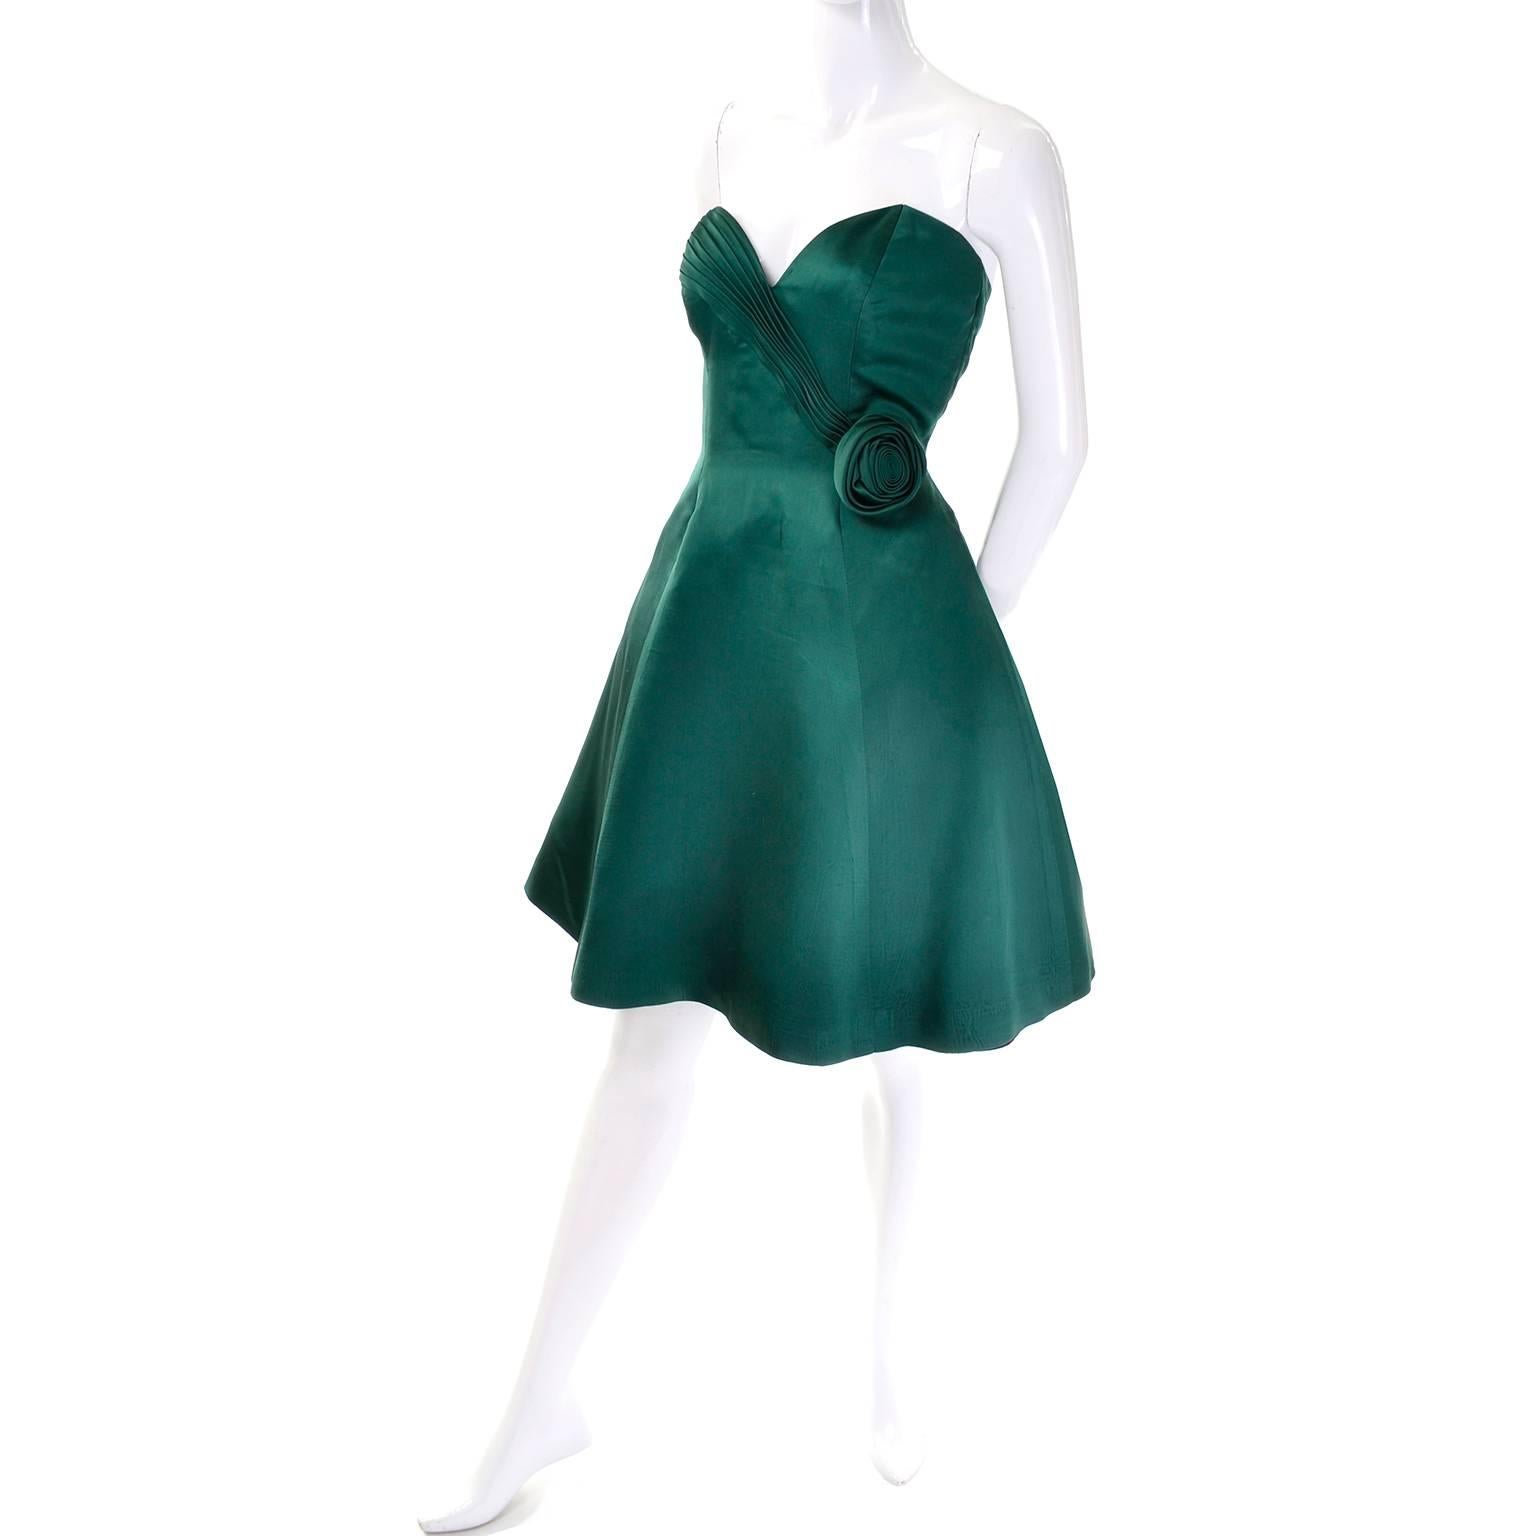 Dieses grüne Vintage-Abendkleid wurde von Vicky Tiel entworfen und in den 1980er Jahren bei Bergdorf Goodman gekauft.  Das Kleid ist trägerlos und hat ein hübsches plissiertes, herzförmiges Mieder, eine Rosetten-